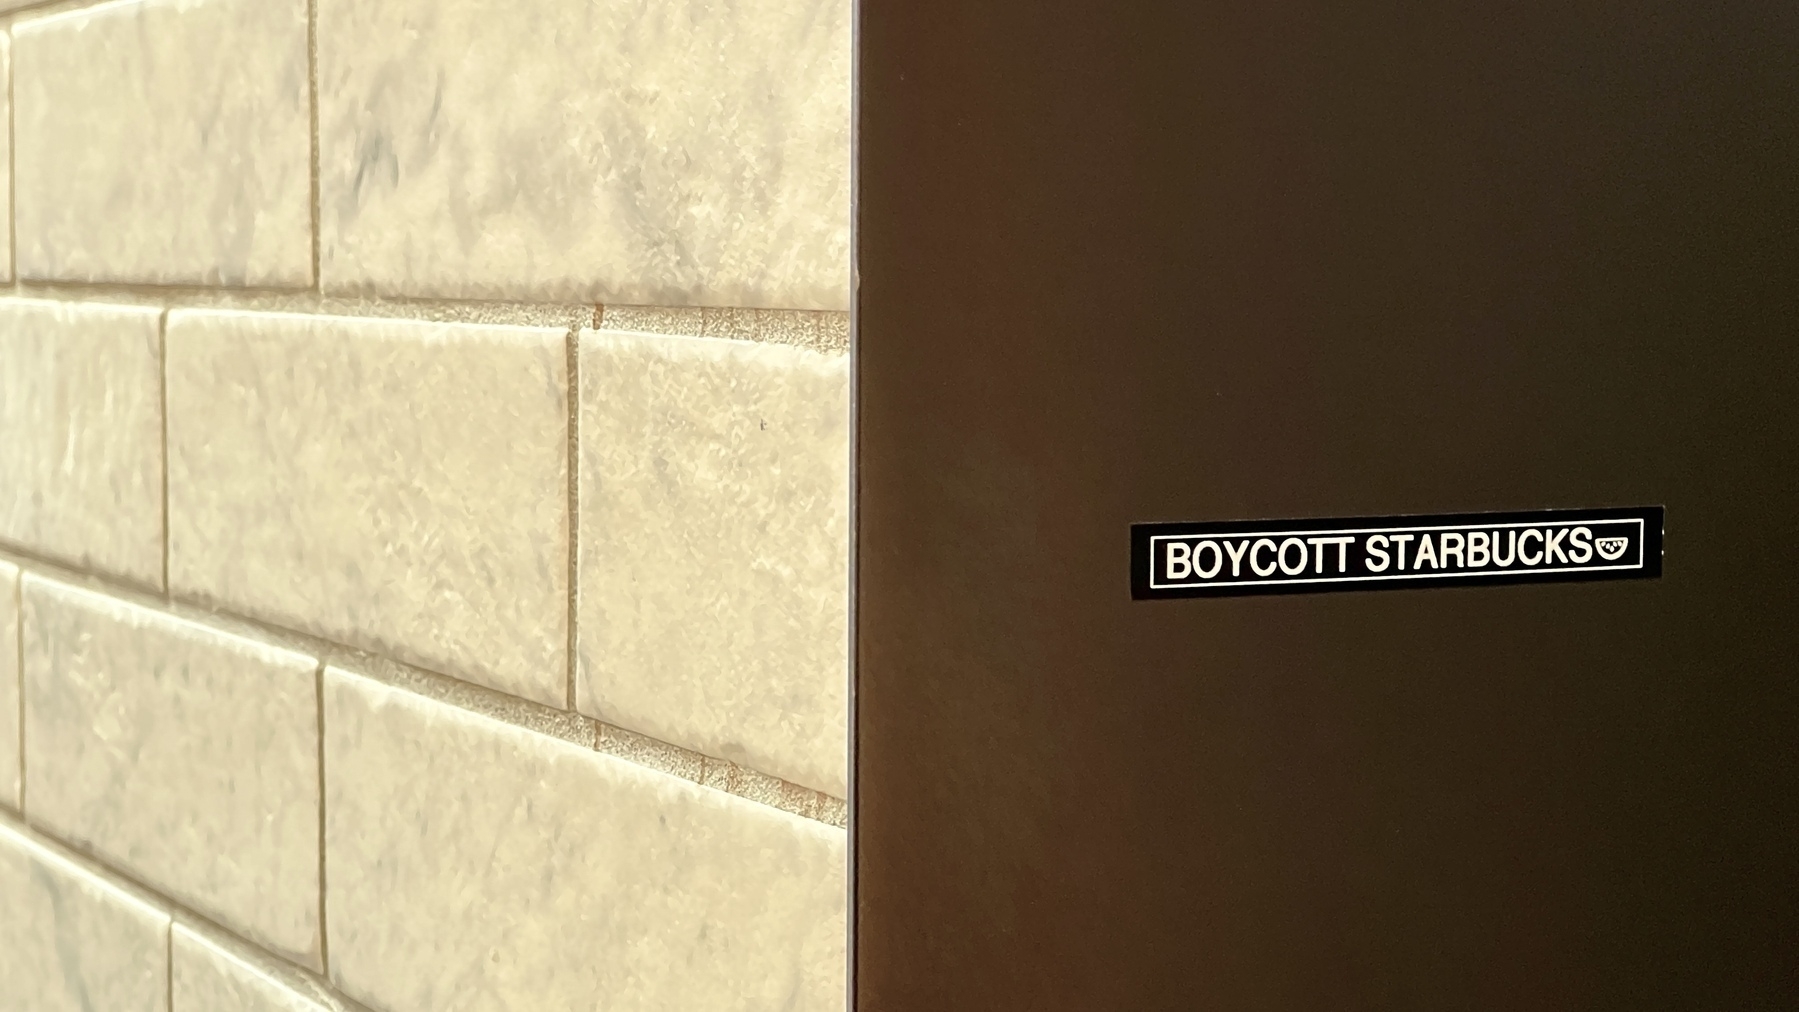 Small sticker on a wall: Boycott Starbucks